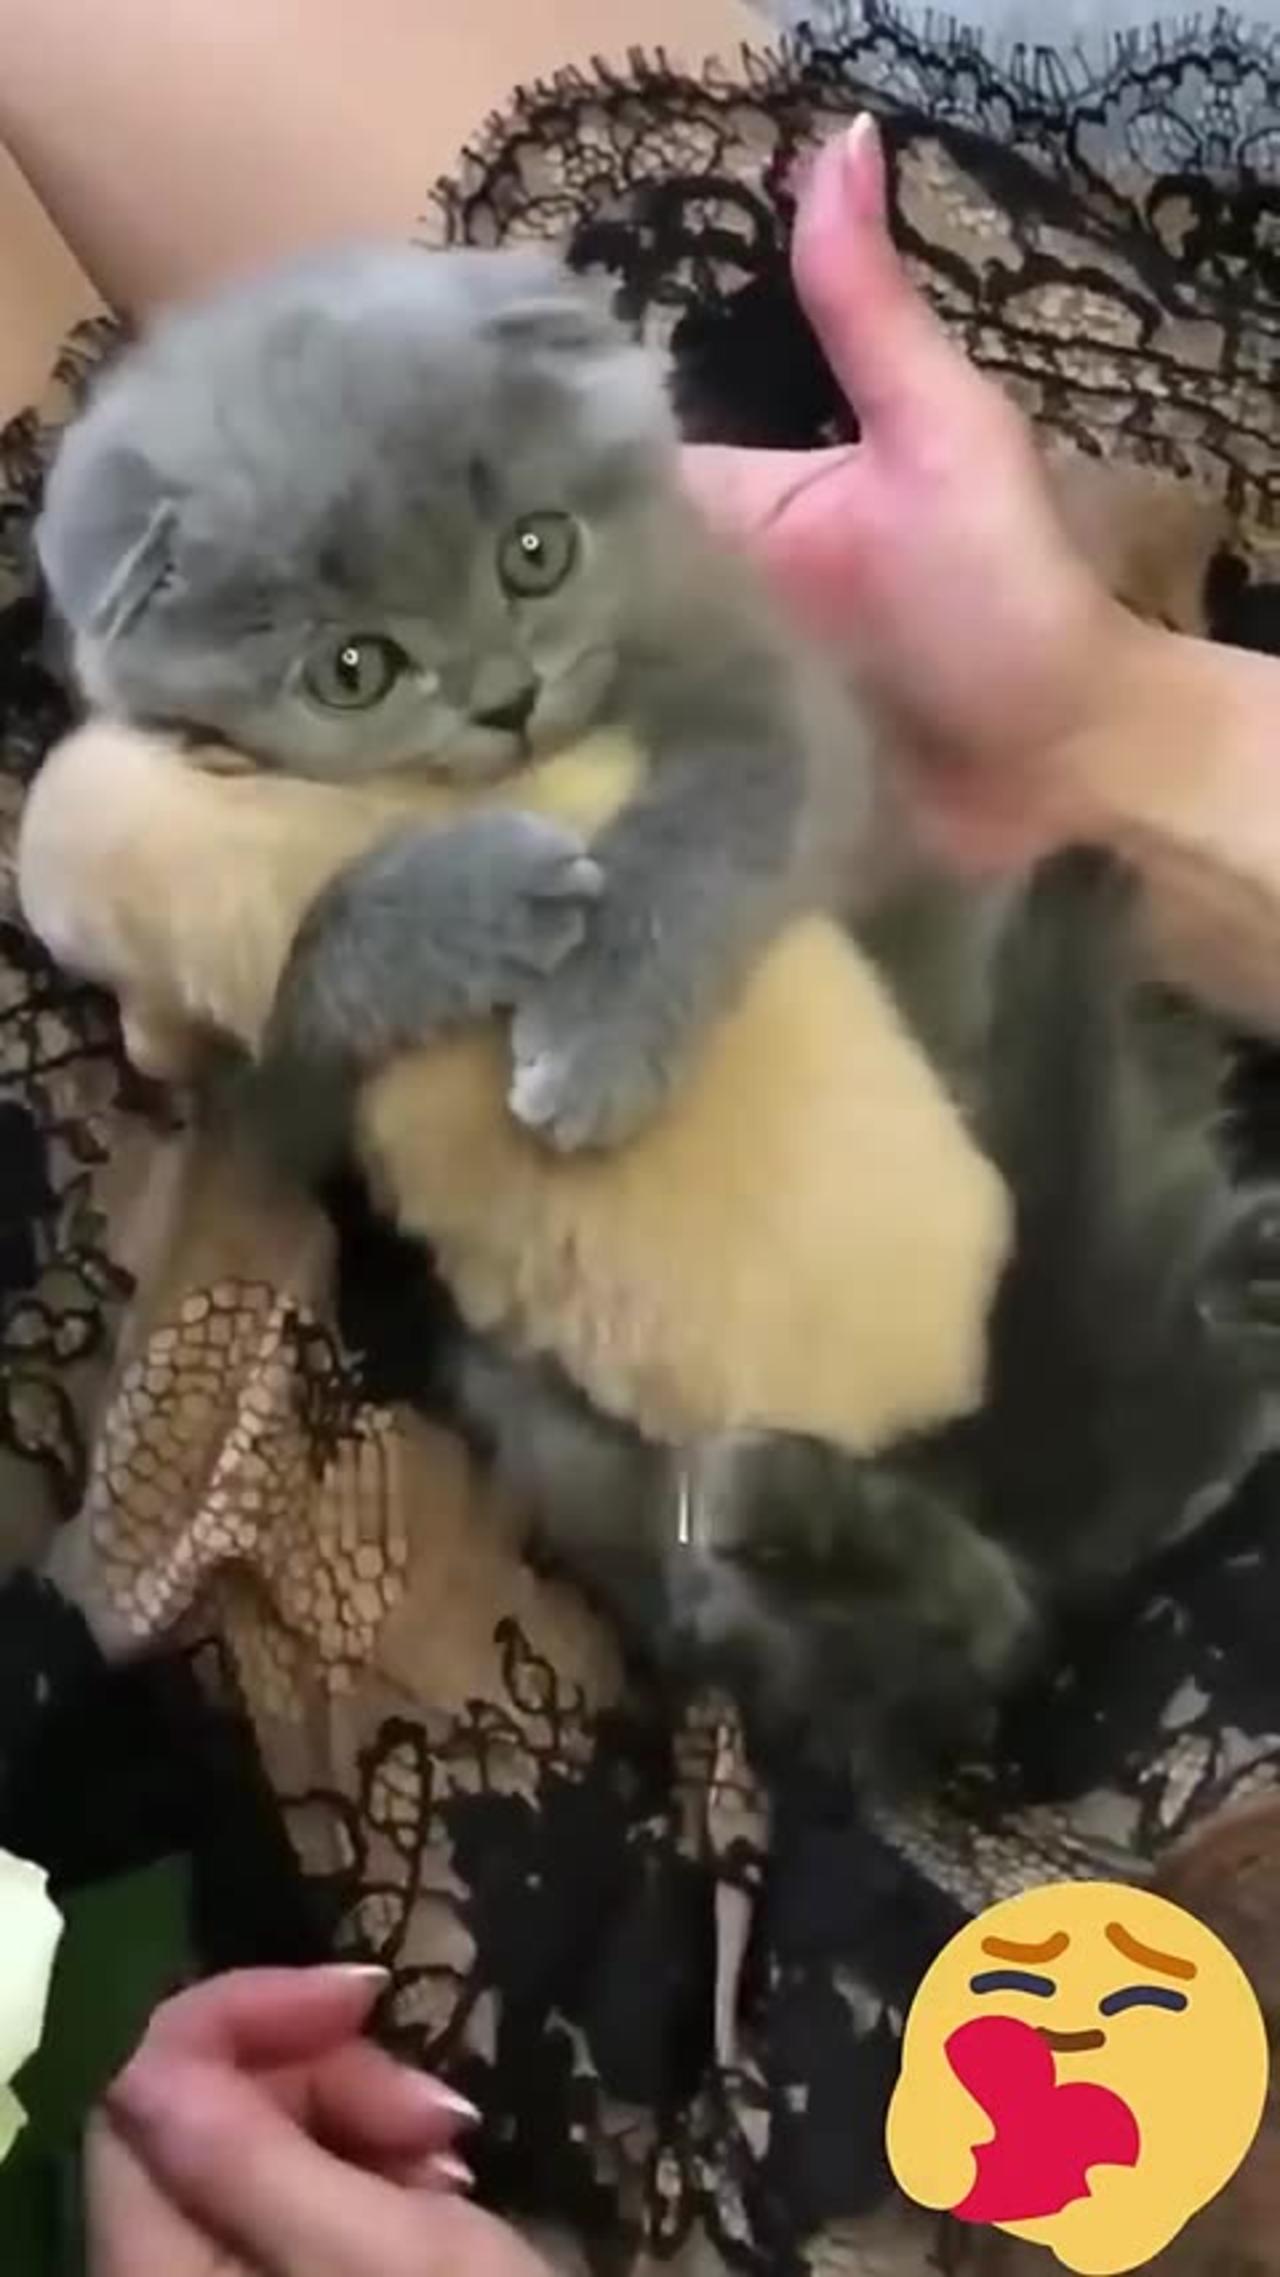 Cute kitten huge's😺😺❤️